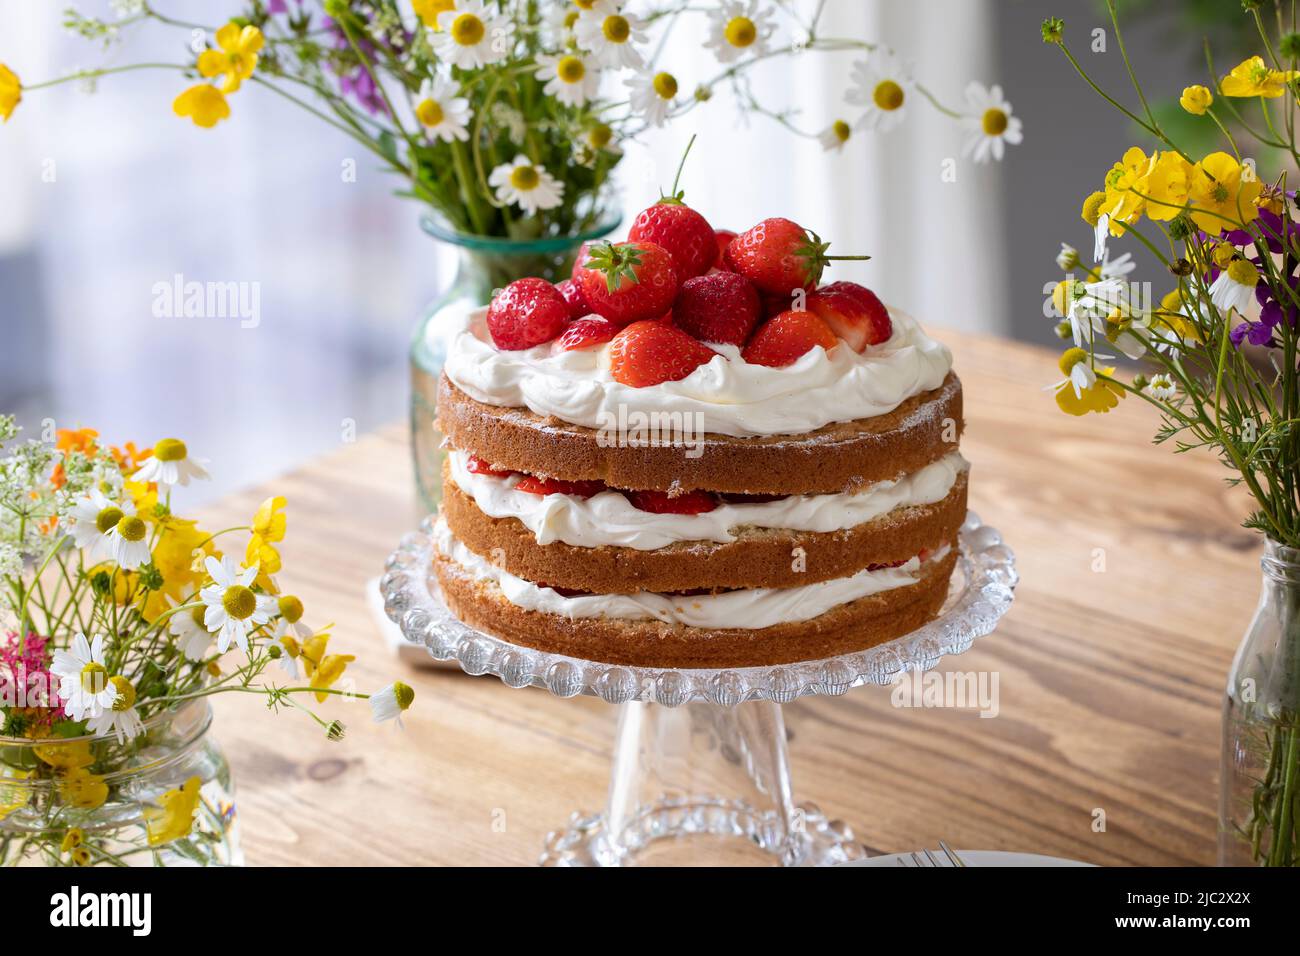 Gâteau scandinave à la fraise et à la crème Banque D'Images